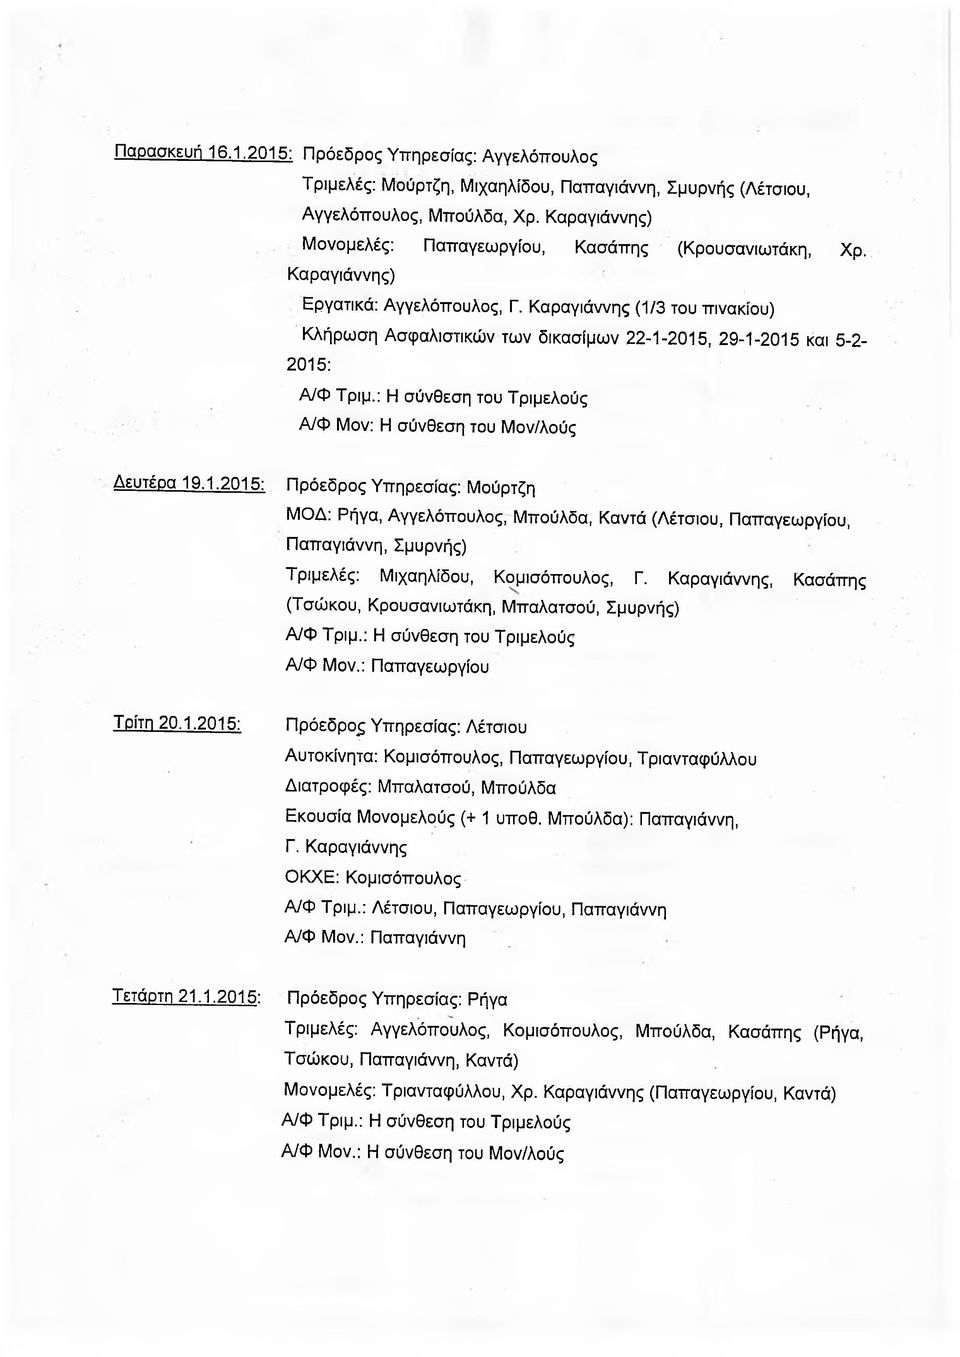 Καραγιάννης (1/3 του πινακίου) Κλήρωση Ασφαλιστικών των δικασίμων 22-1-2015, 29-1-2015 και 5-2- 2015: Δευτέρα 19.1.2015: ΜΟΔ: Ρήγα, Αγγελόπουλος, Μπούλδα, Καντά (Λέτσιου, Παπαγεωργίου, Παπαγιάννη, Σμύρνής) Τριμελές: Μιχαηλίδου, Κομισόπουλος, Γ.